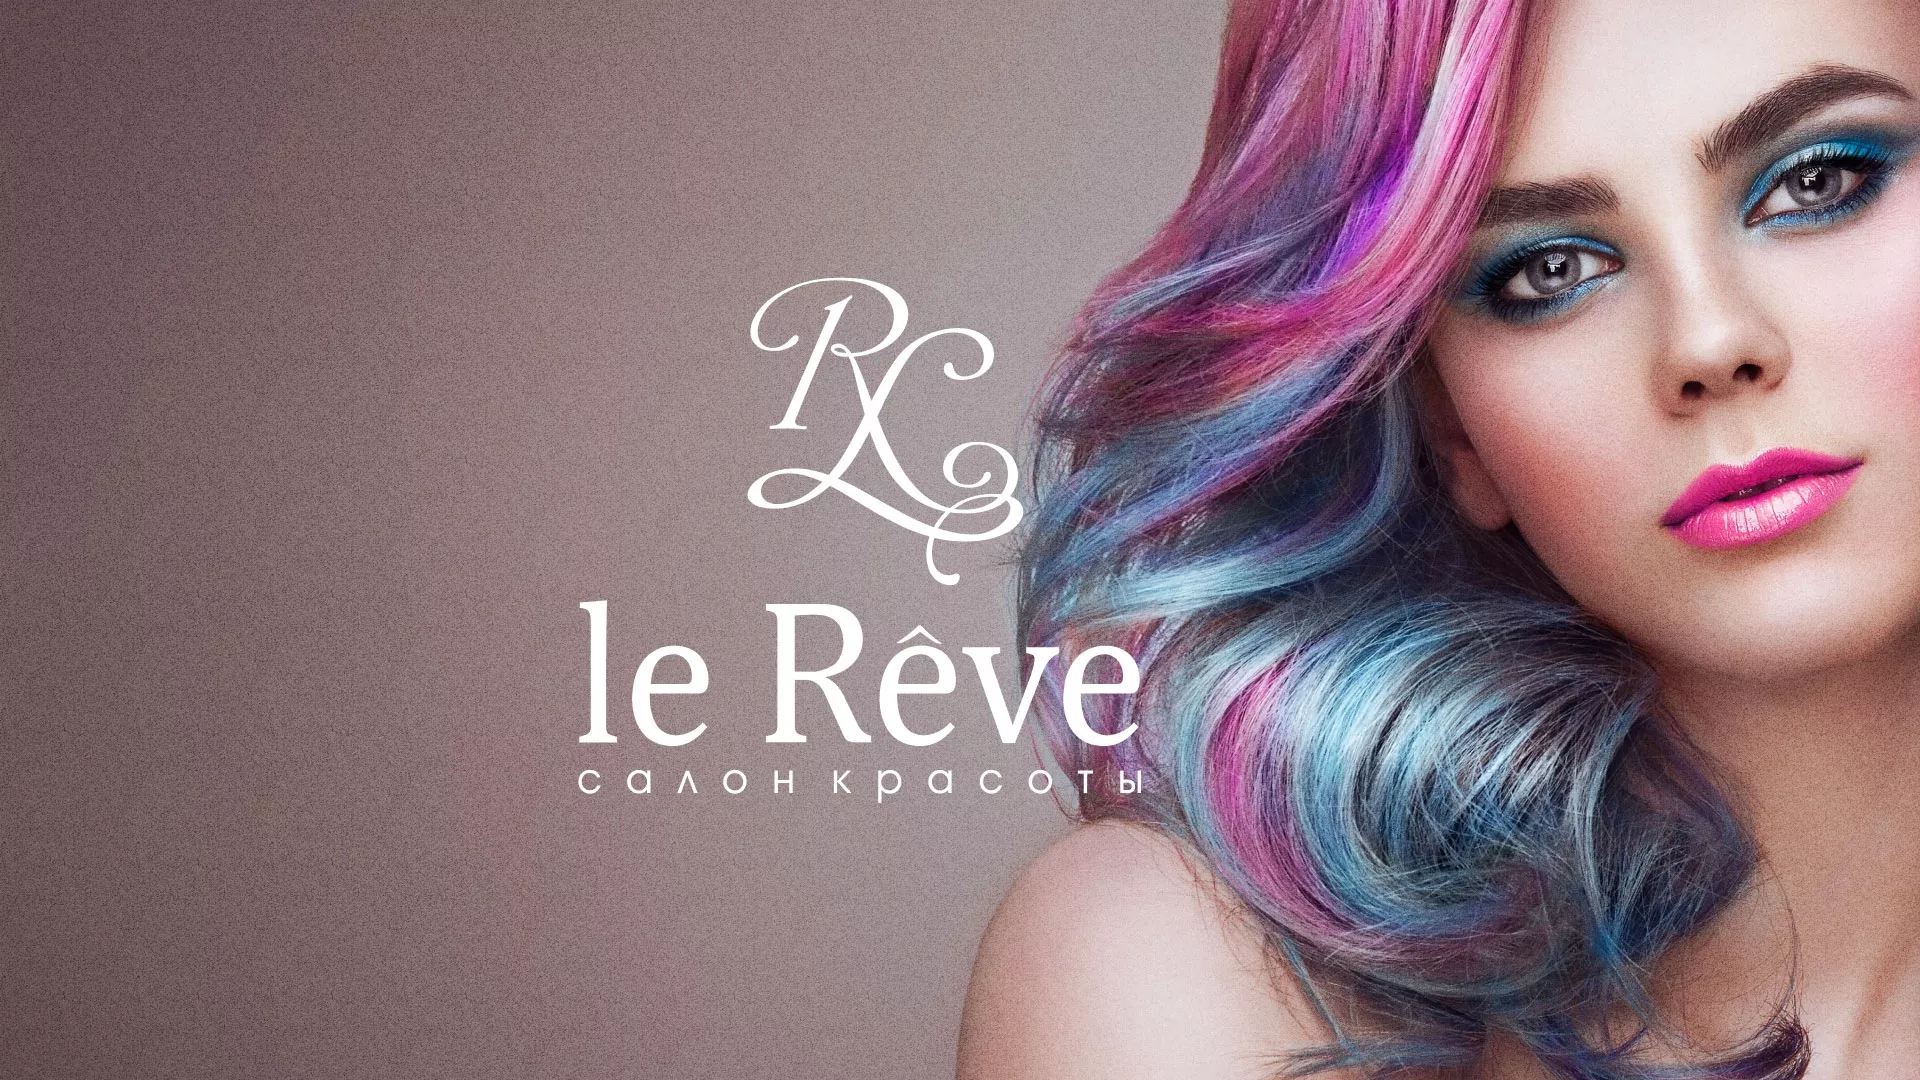 Создание сайта для салона красоты «Le Reve» в Апатитах